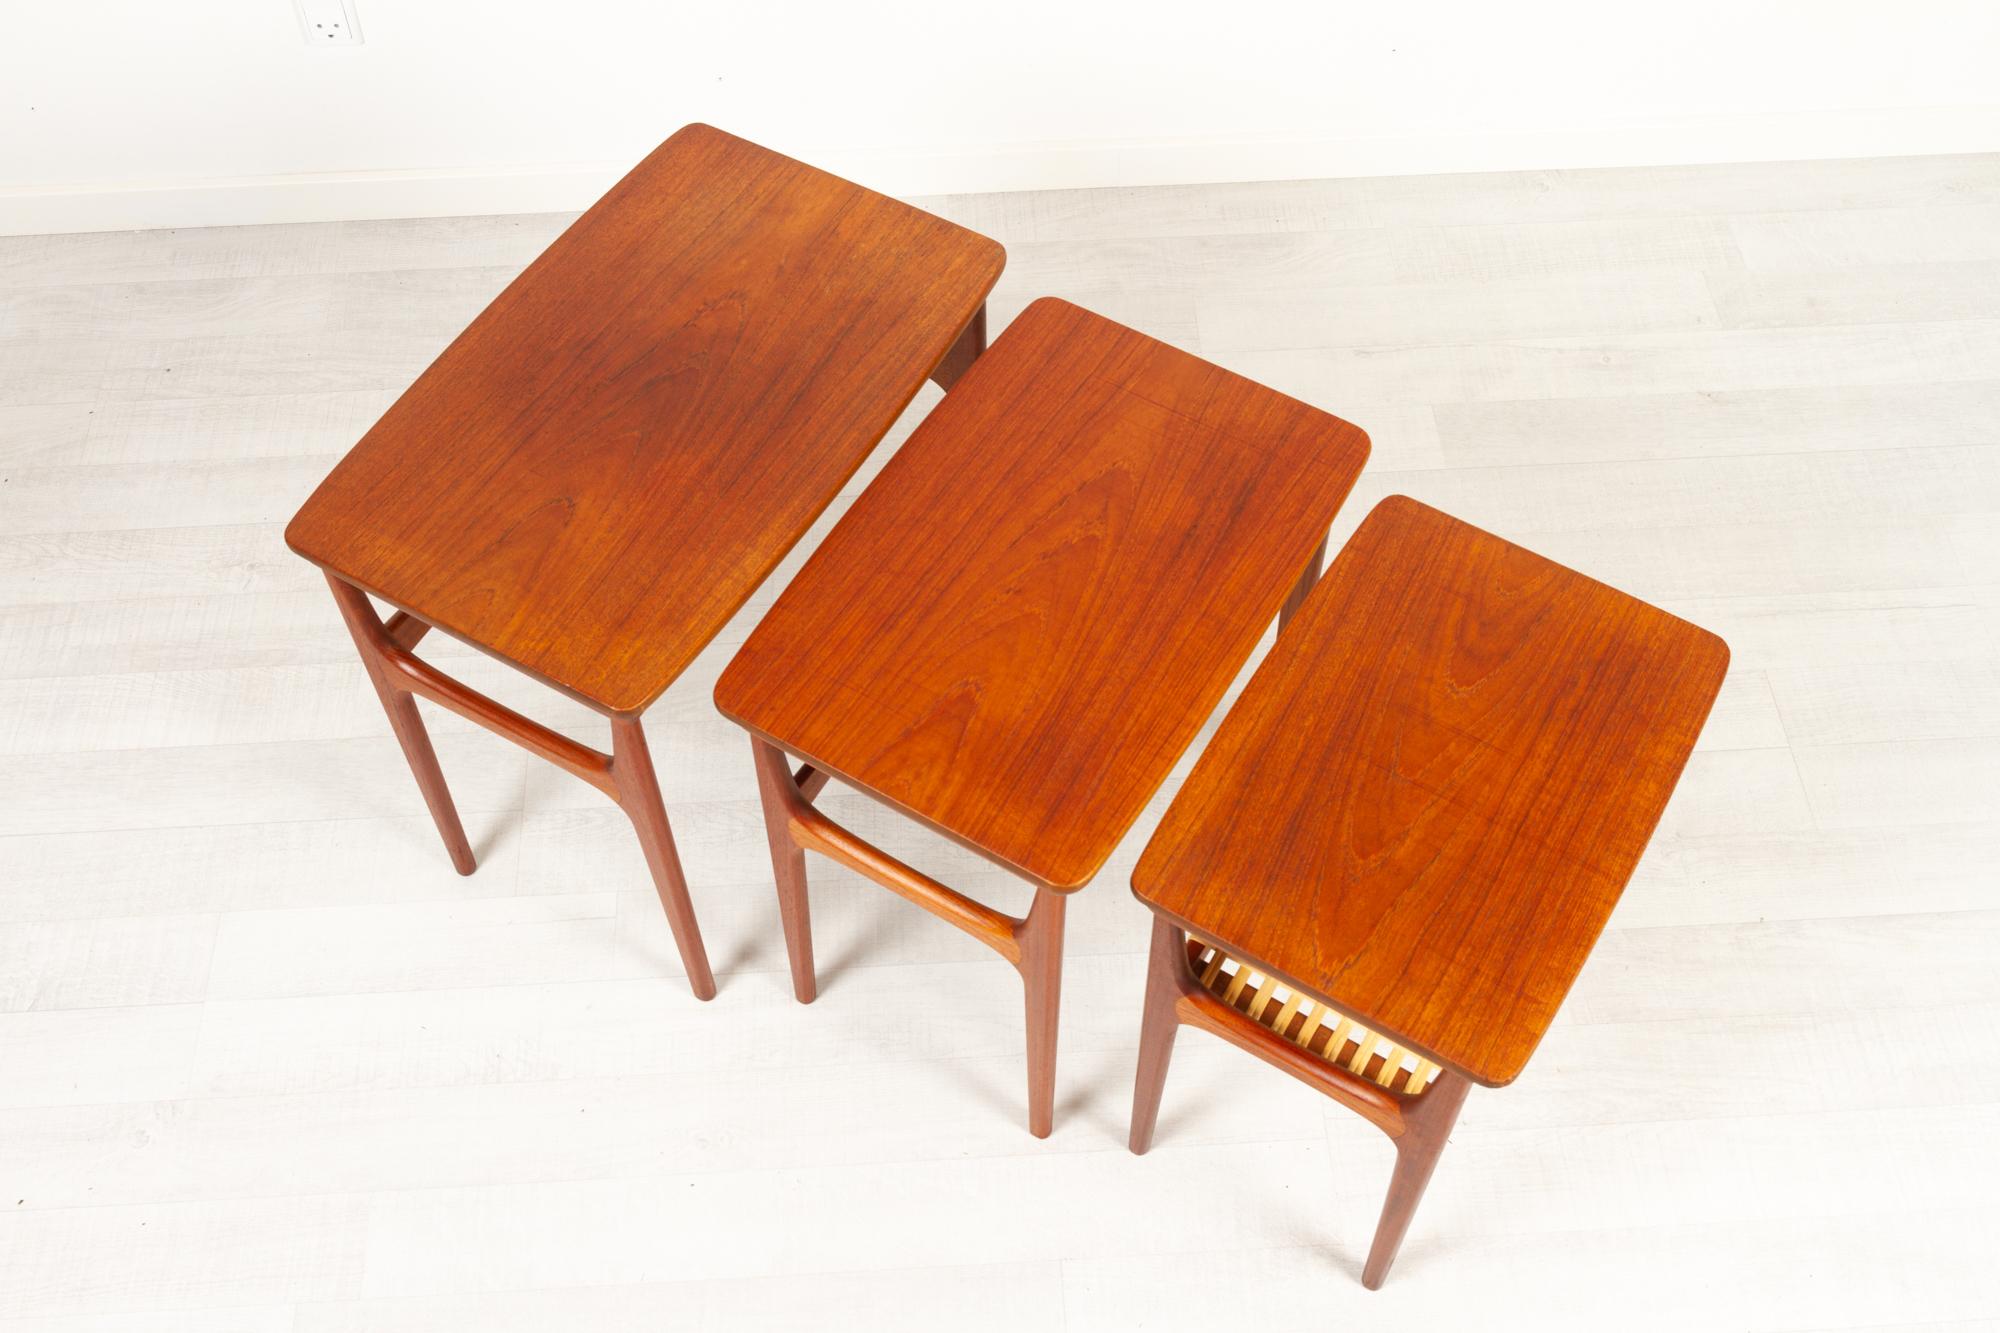 Vintage Danish Teak Nesting Tables by Erling Torvits for Heltborg Møbler 1950s For Sale 4